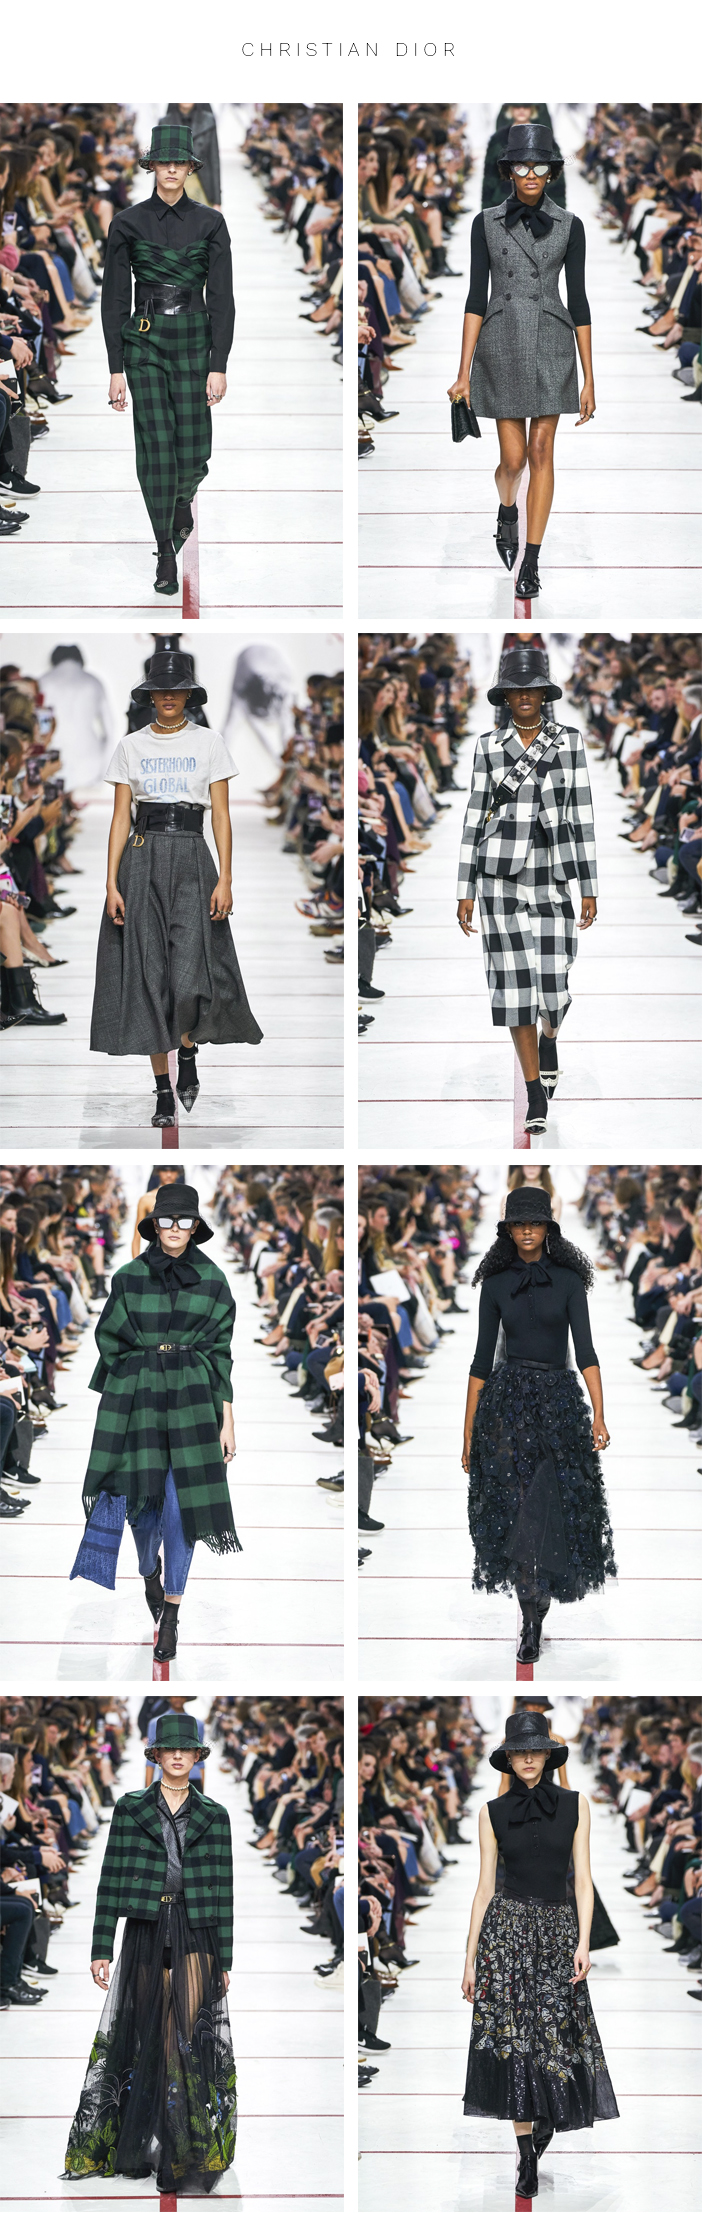 Semana de Moda de Paris - Inverno 2019 - Parte 1 - Christian Dior